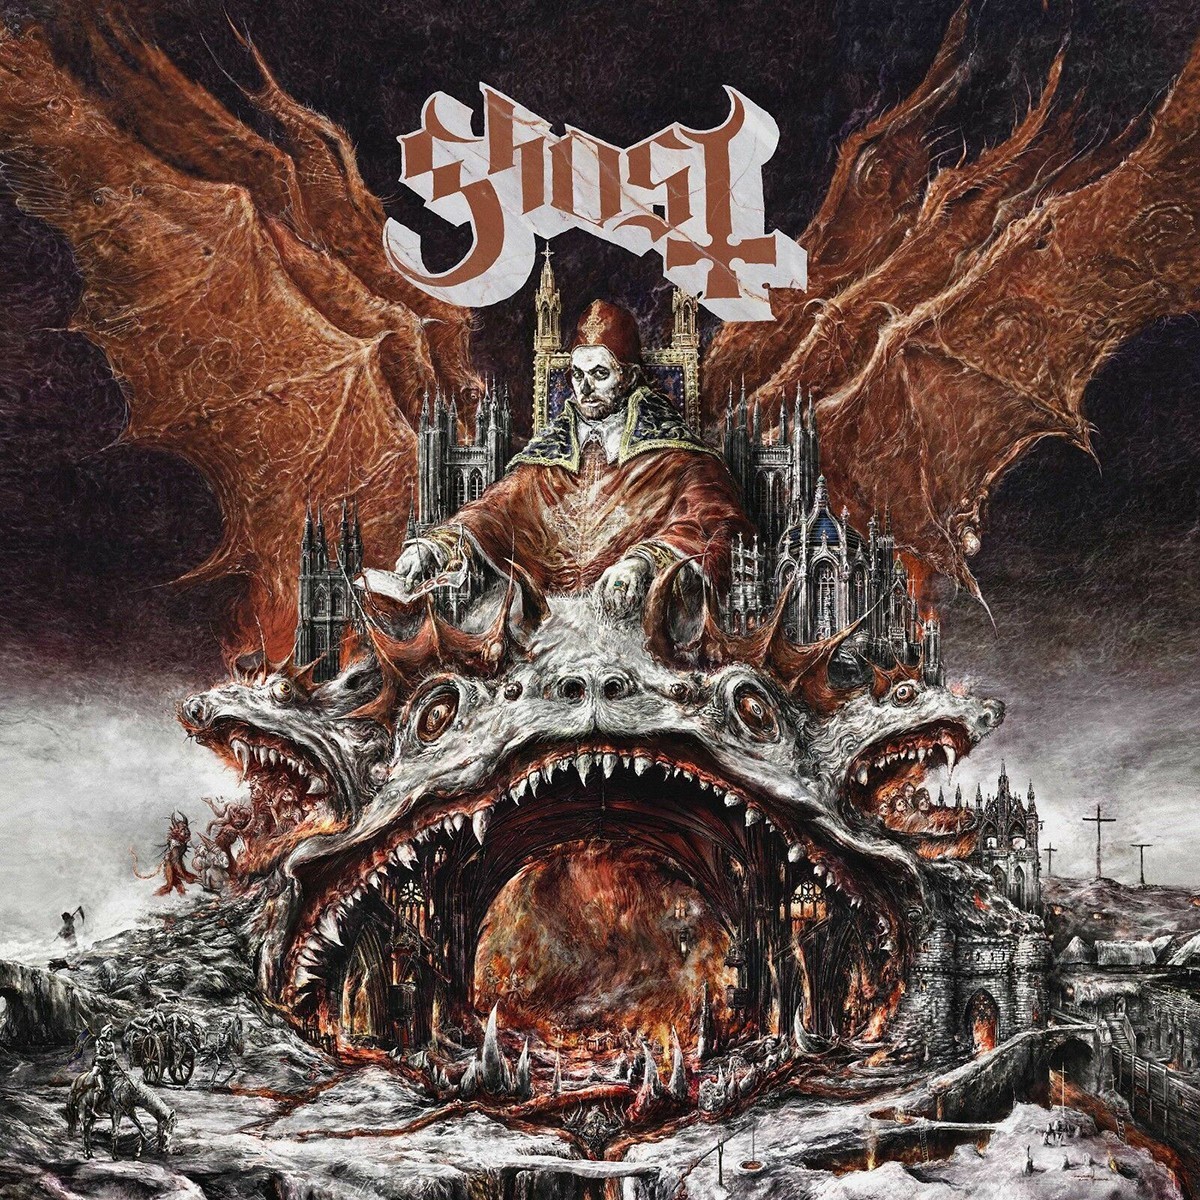 Albumcover "Prequelle" von Ghost